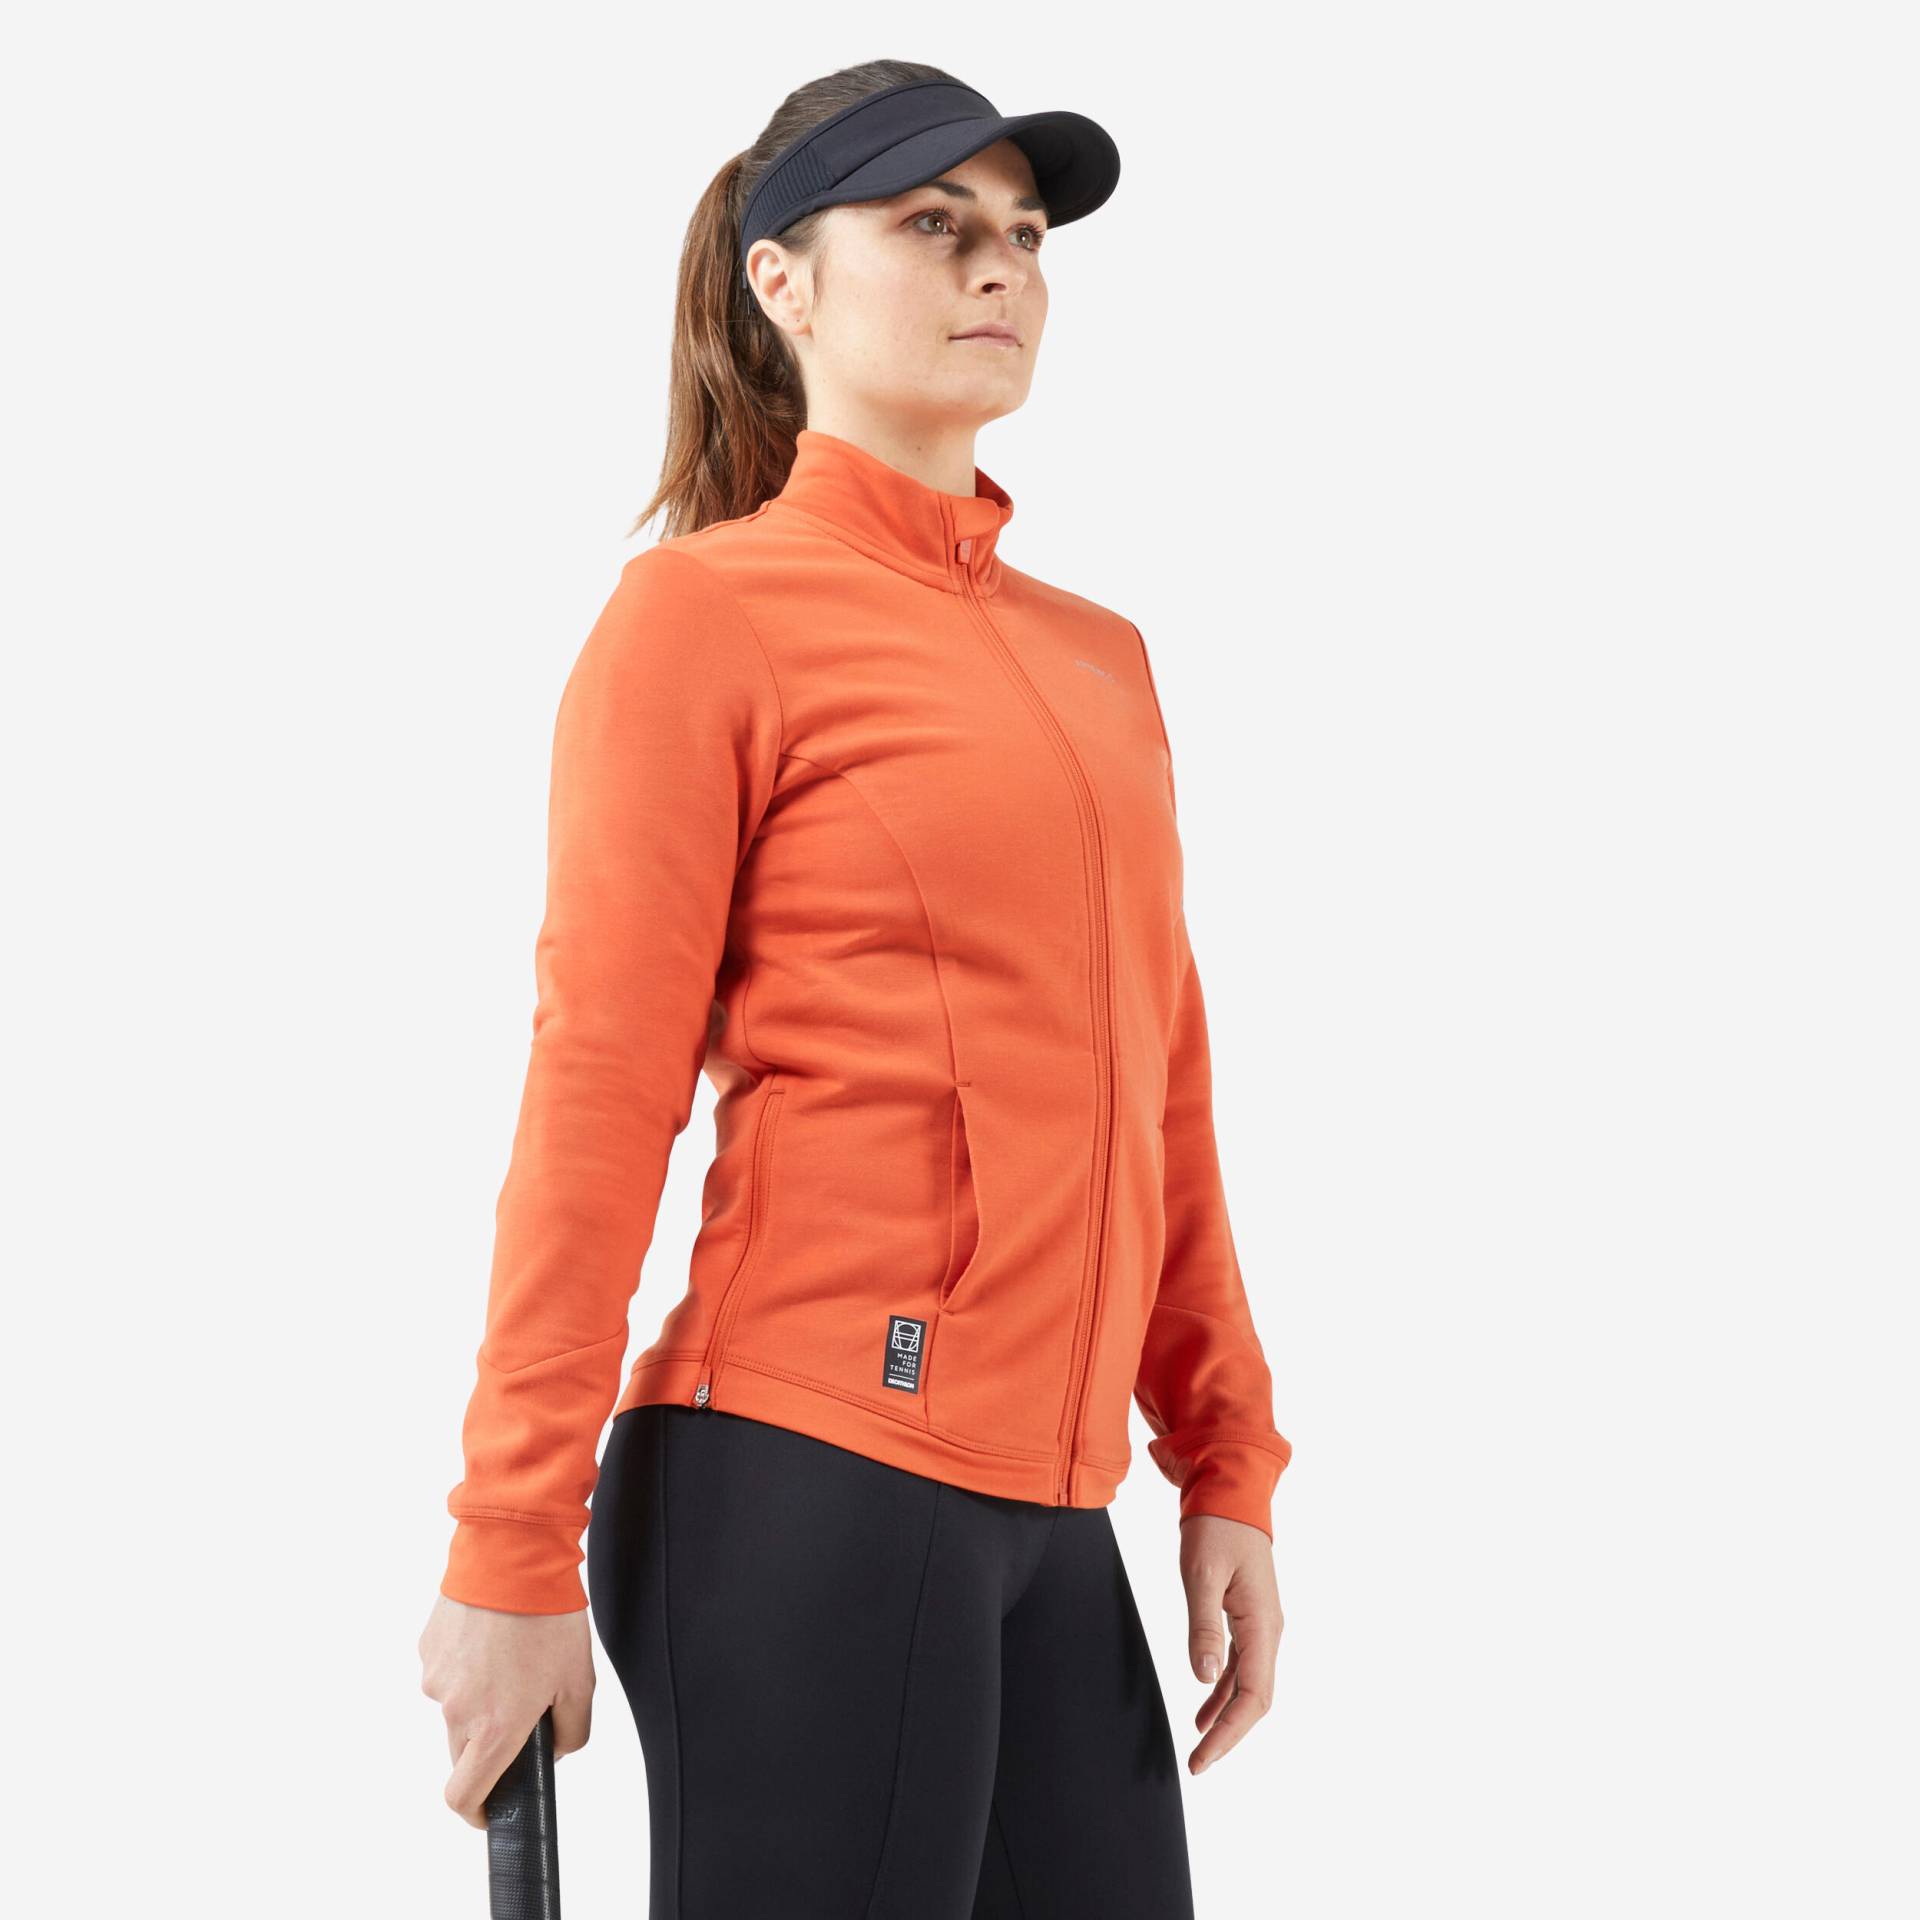 Damen Tennisjacke - Dry Soft 900 orange von ARTENGO